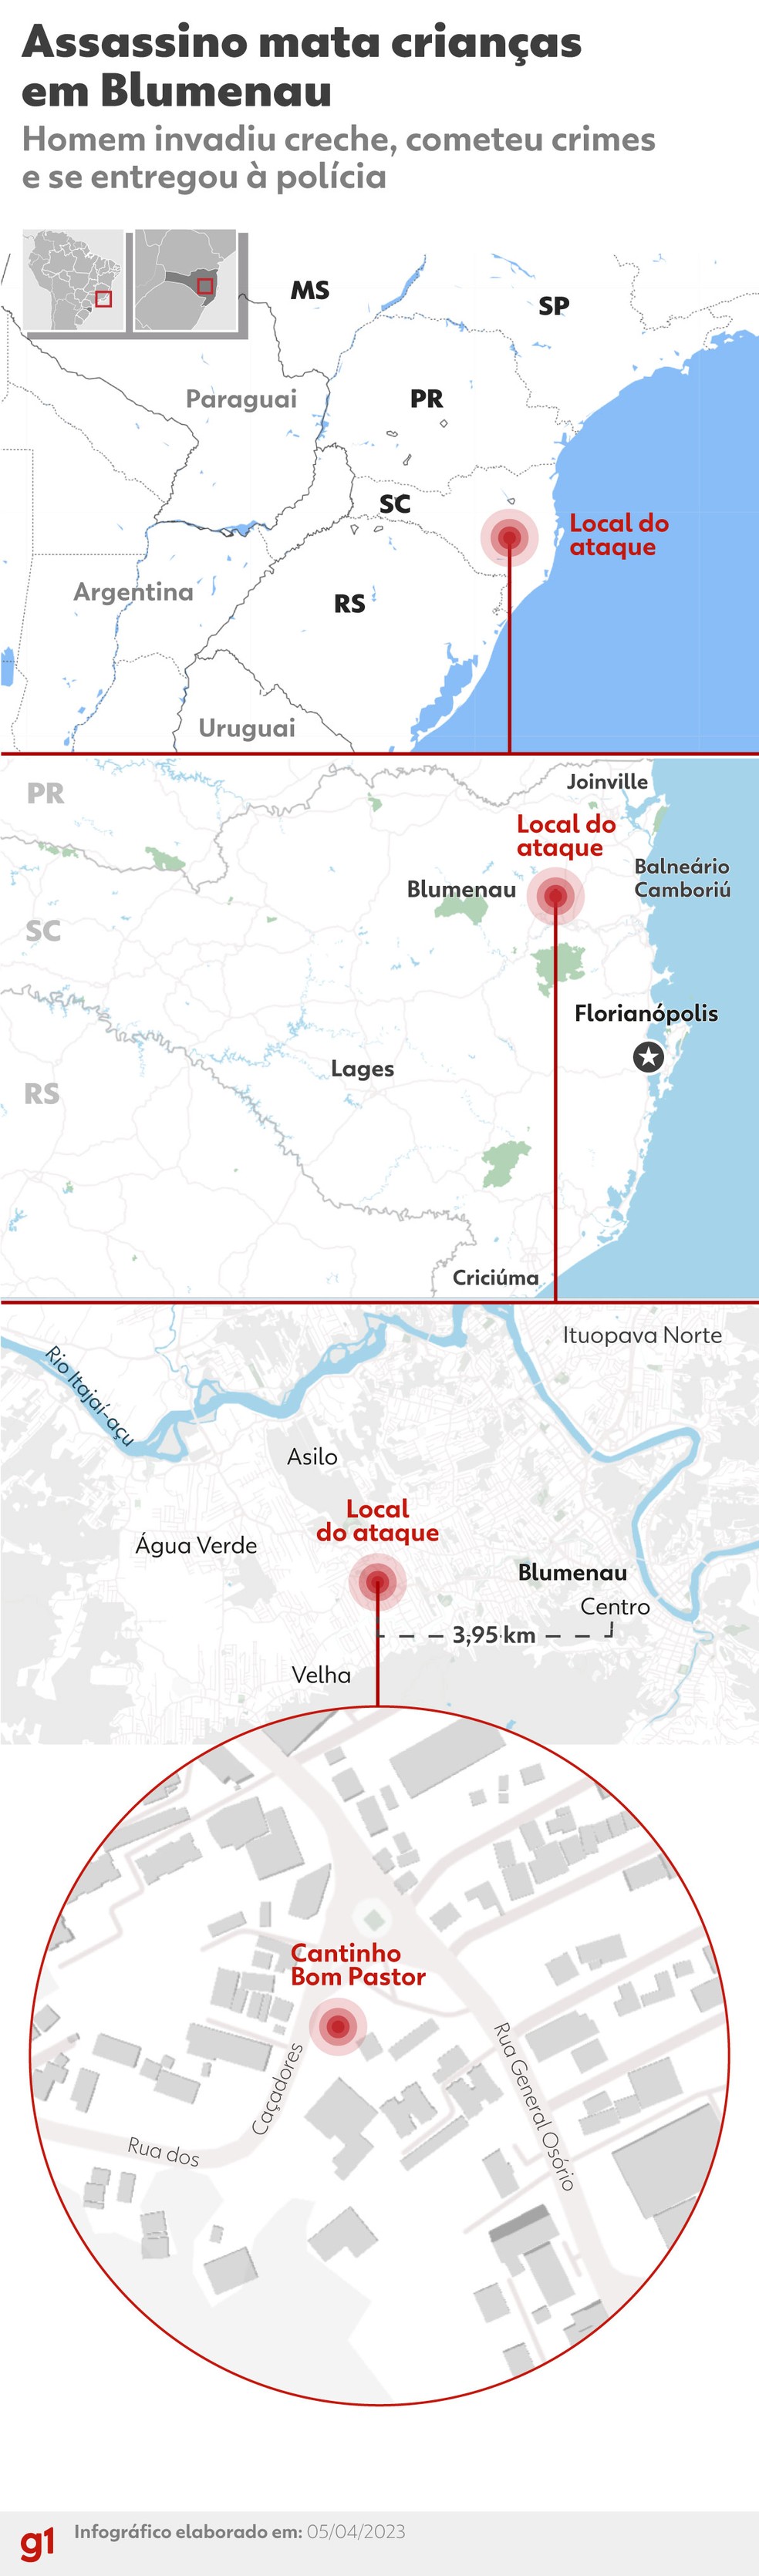 Mapa mostra local do ataque em Blumenau — Foto: Arte/g1